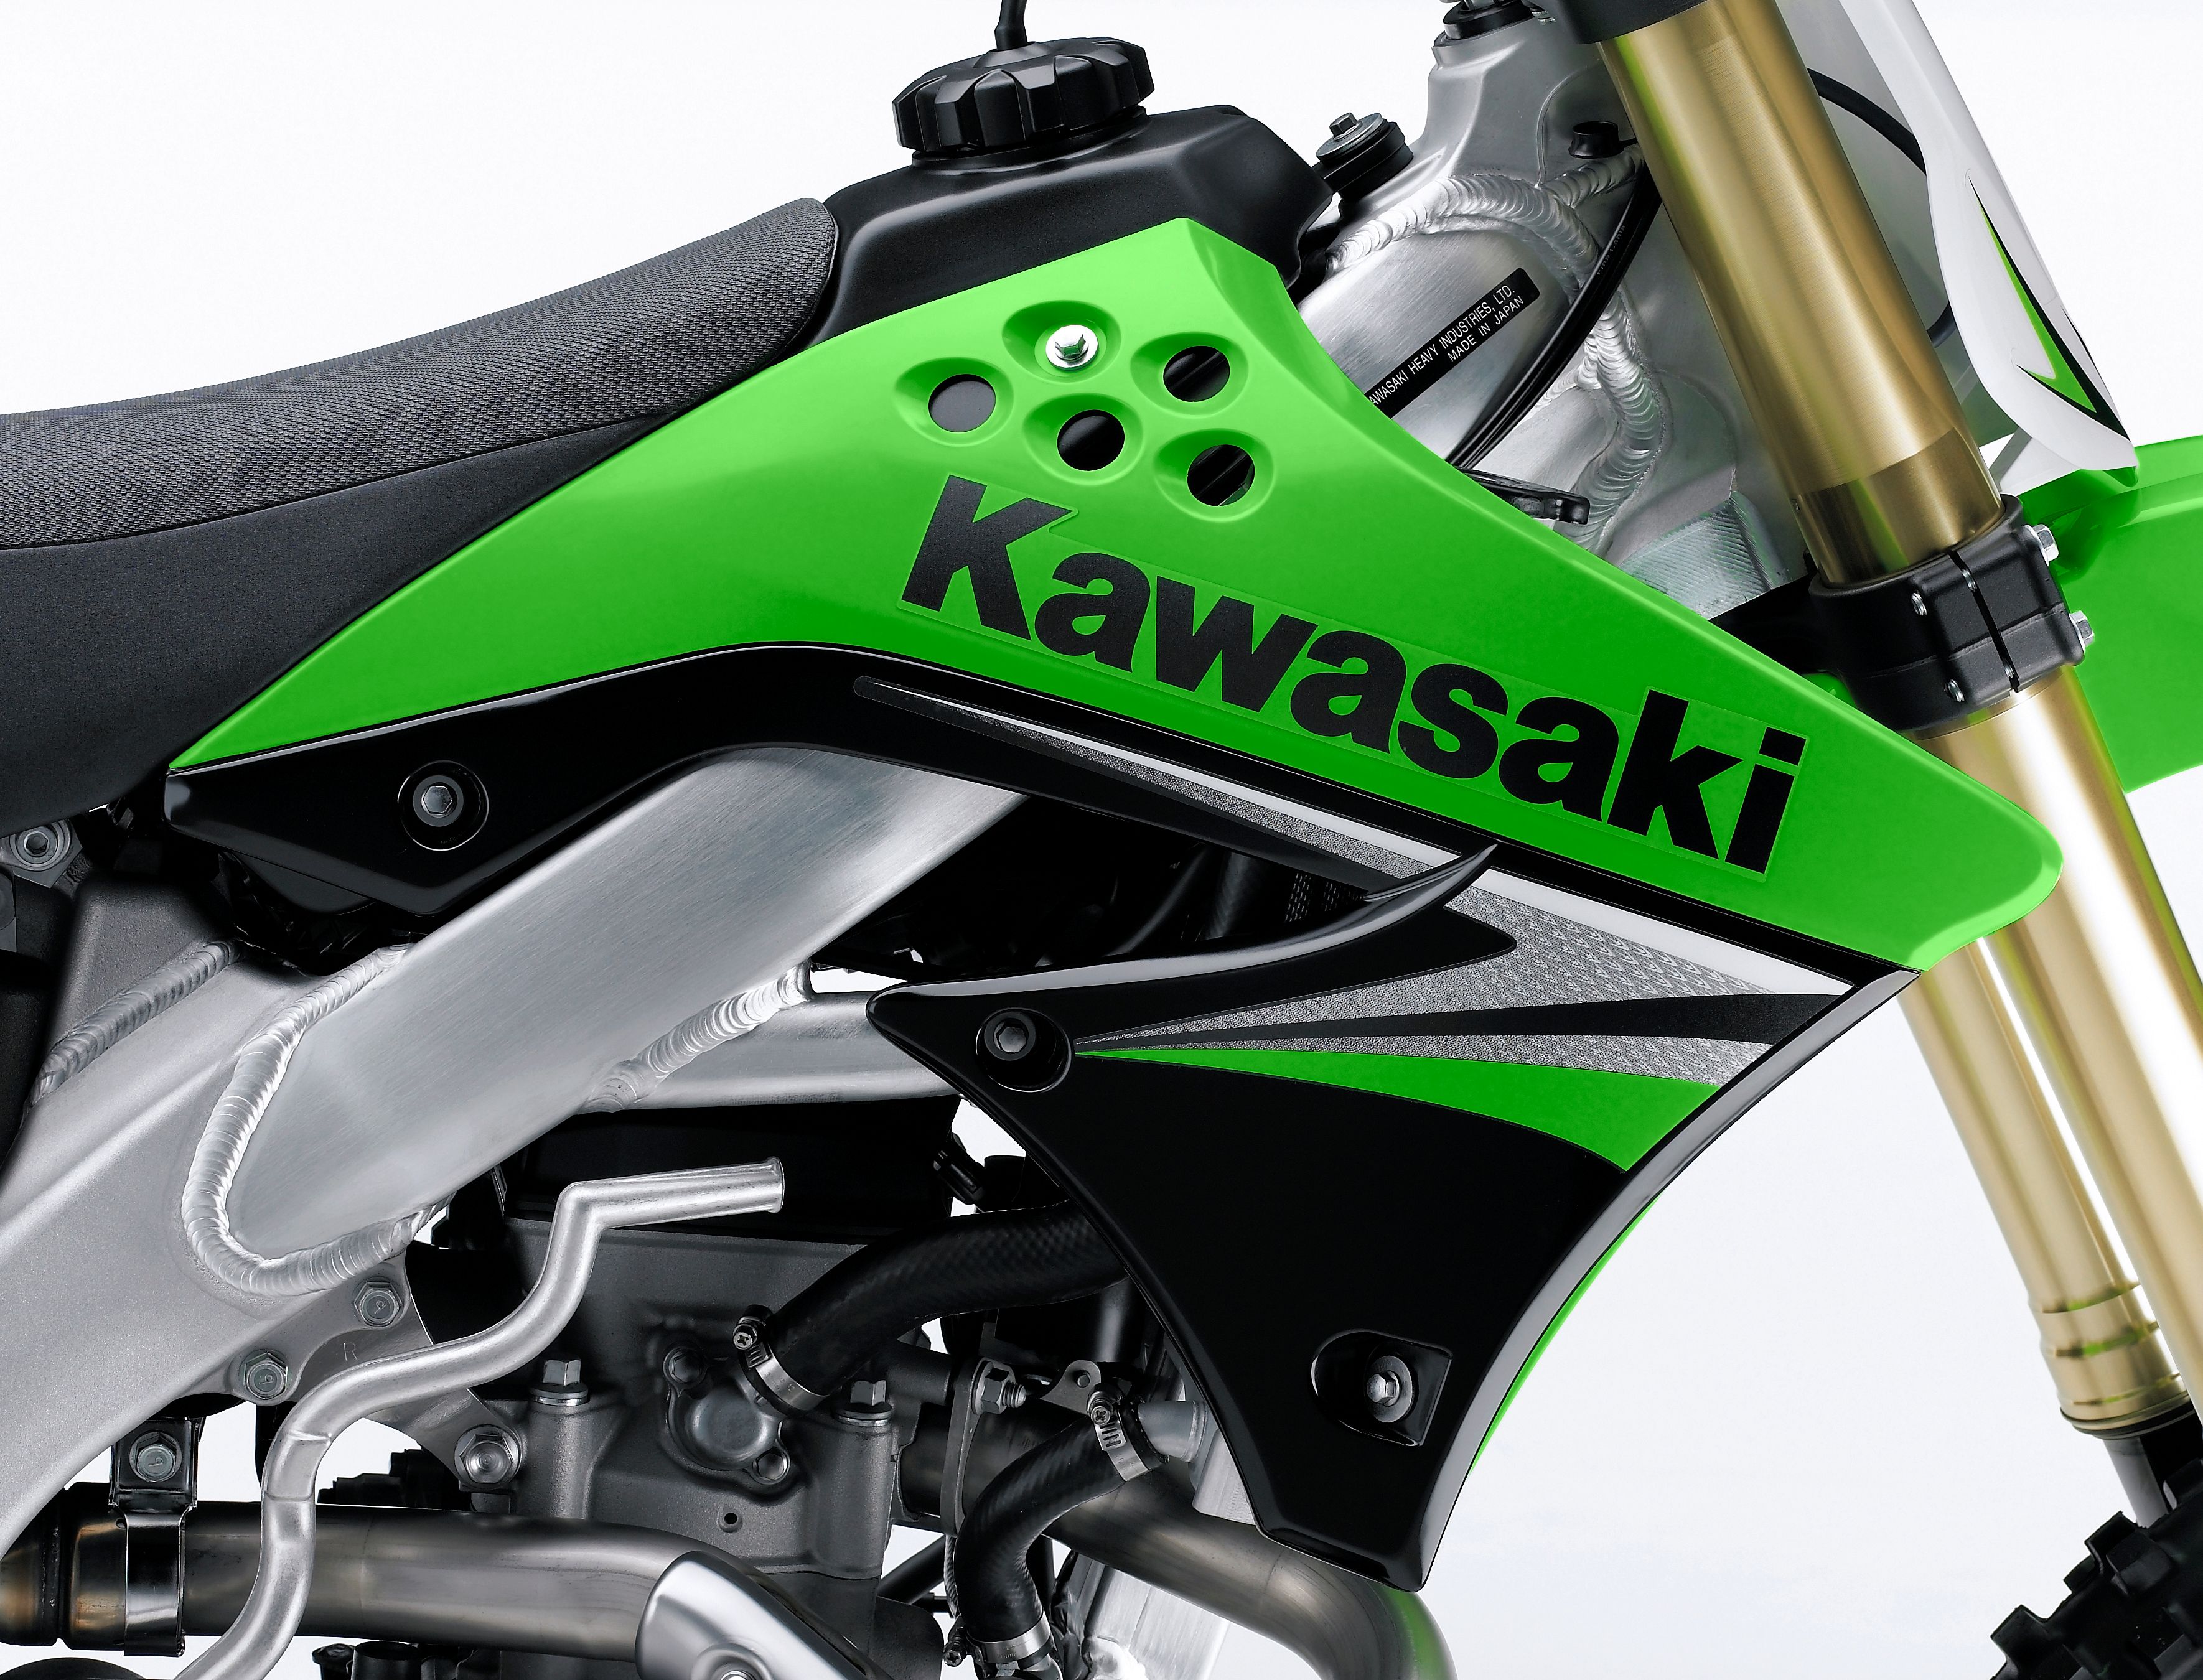  2009 Kawasaki KX450F